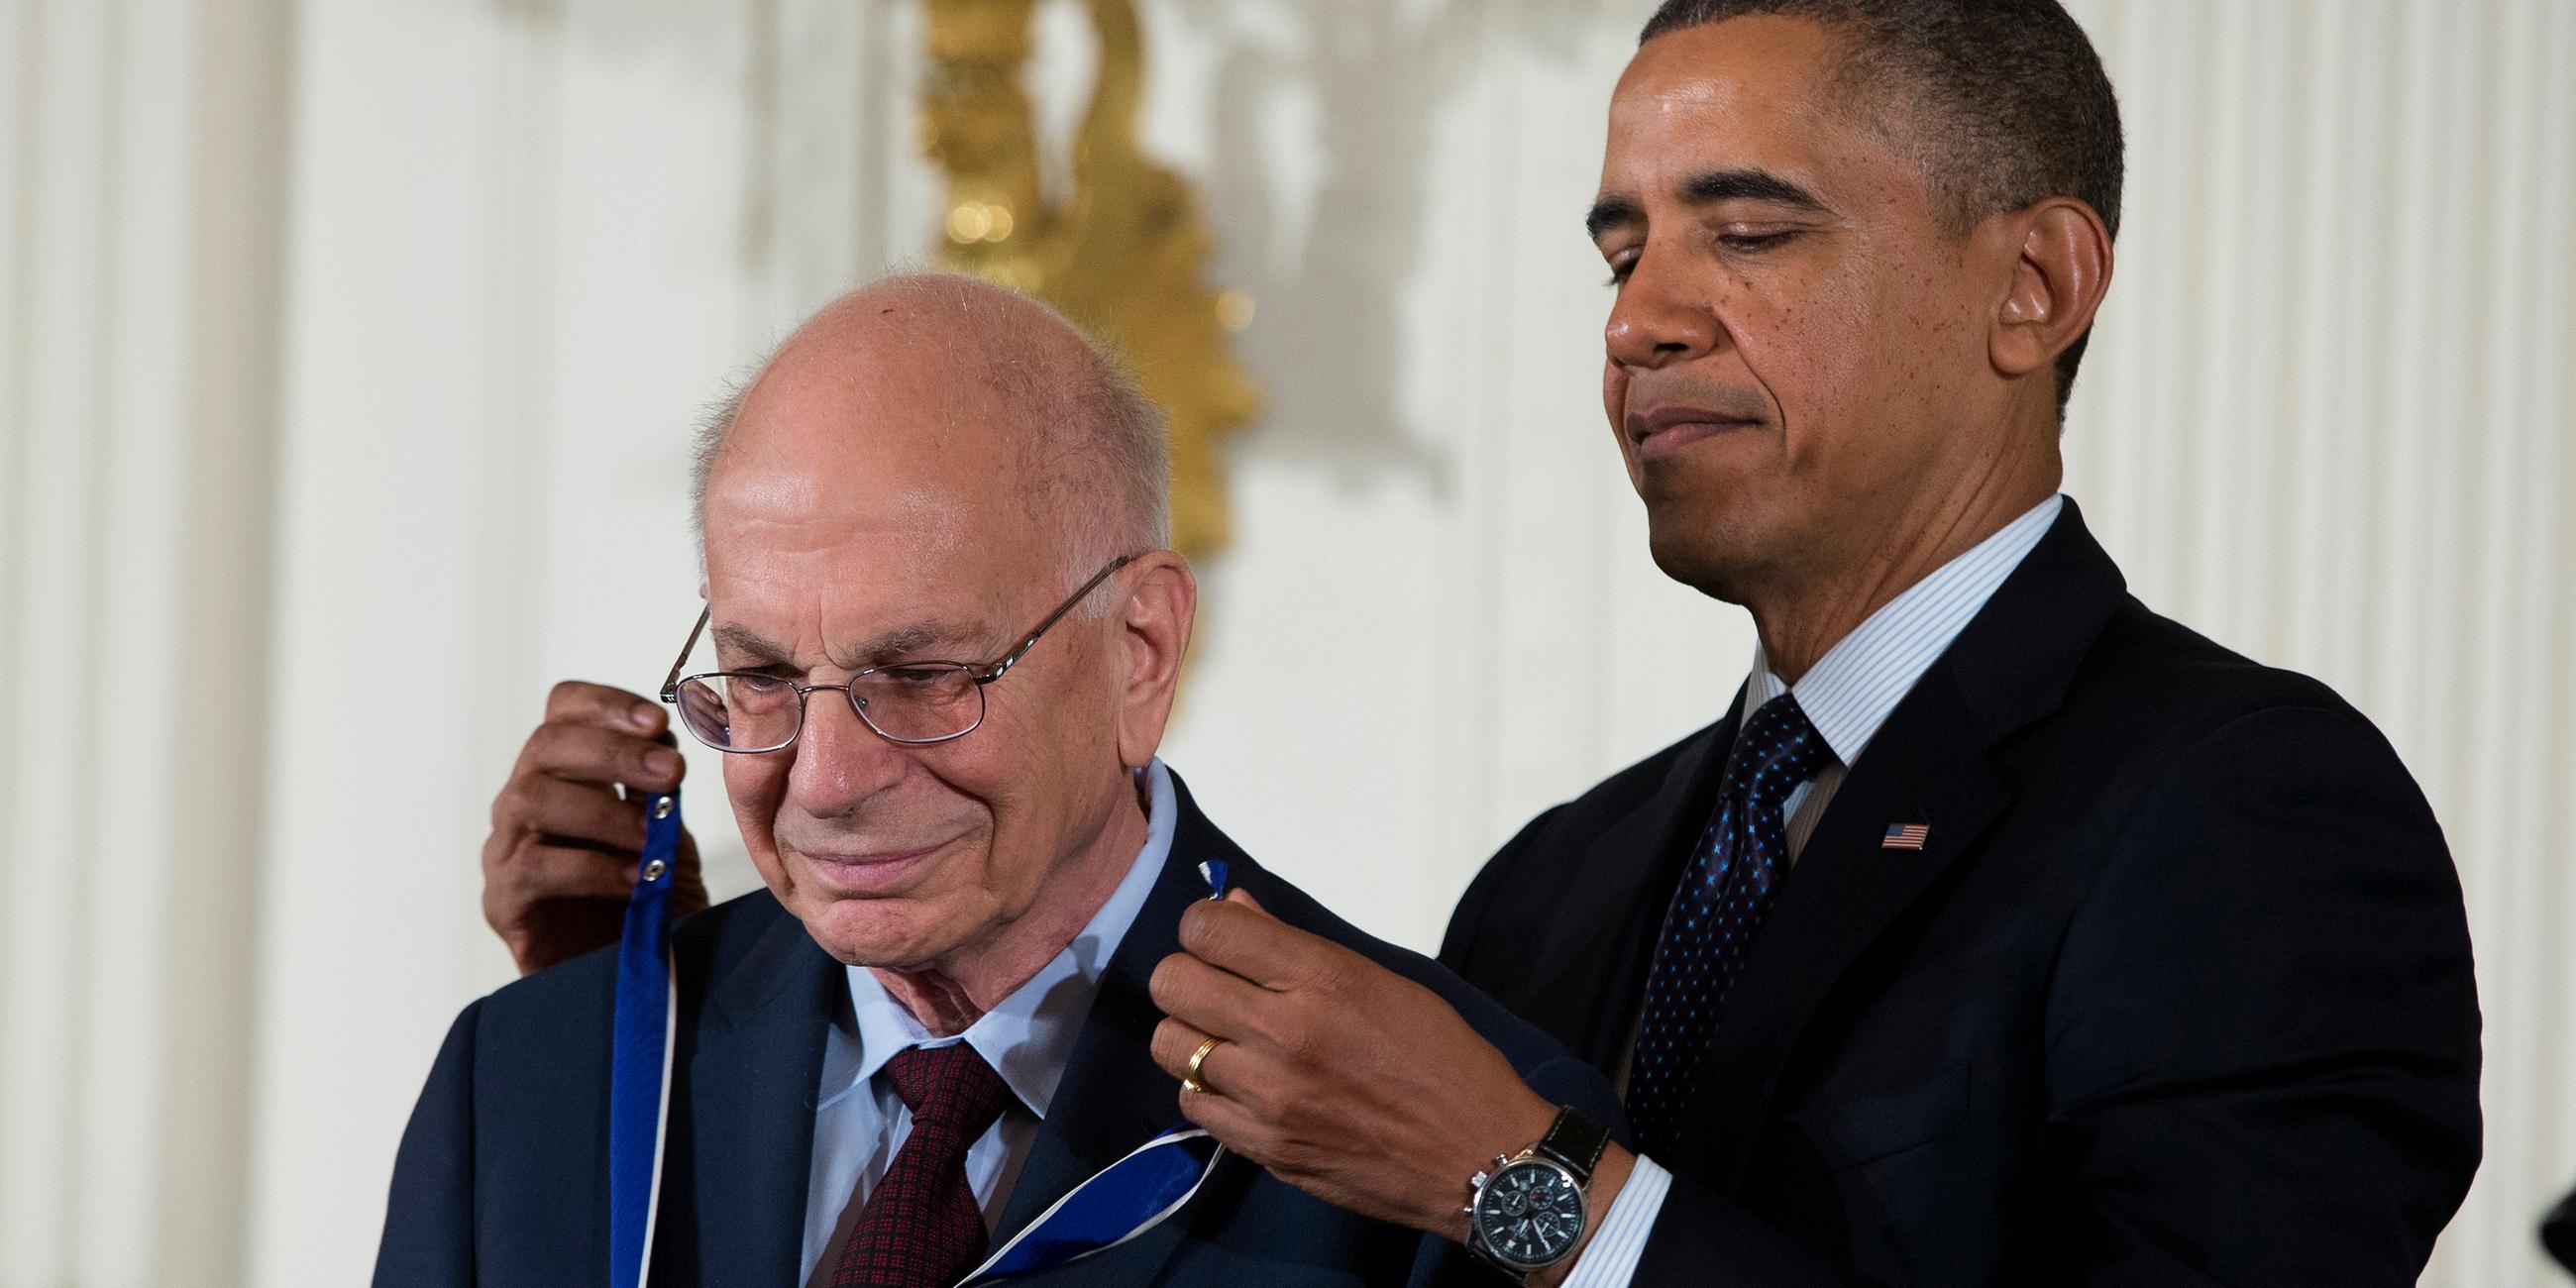 Daniel Kahneman erhielt 2013 die Freiheitsmedaille "Presidential Medal of Freedom" vom damaligen US-Präsidenten Barack Obama.